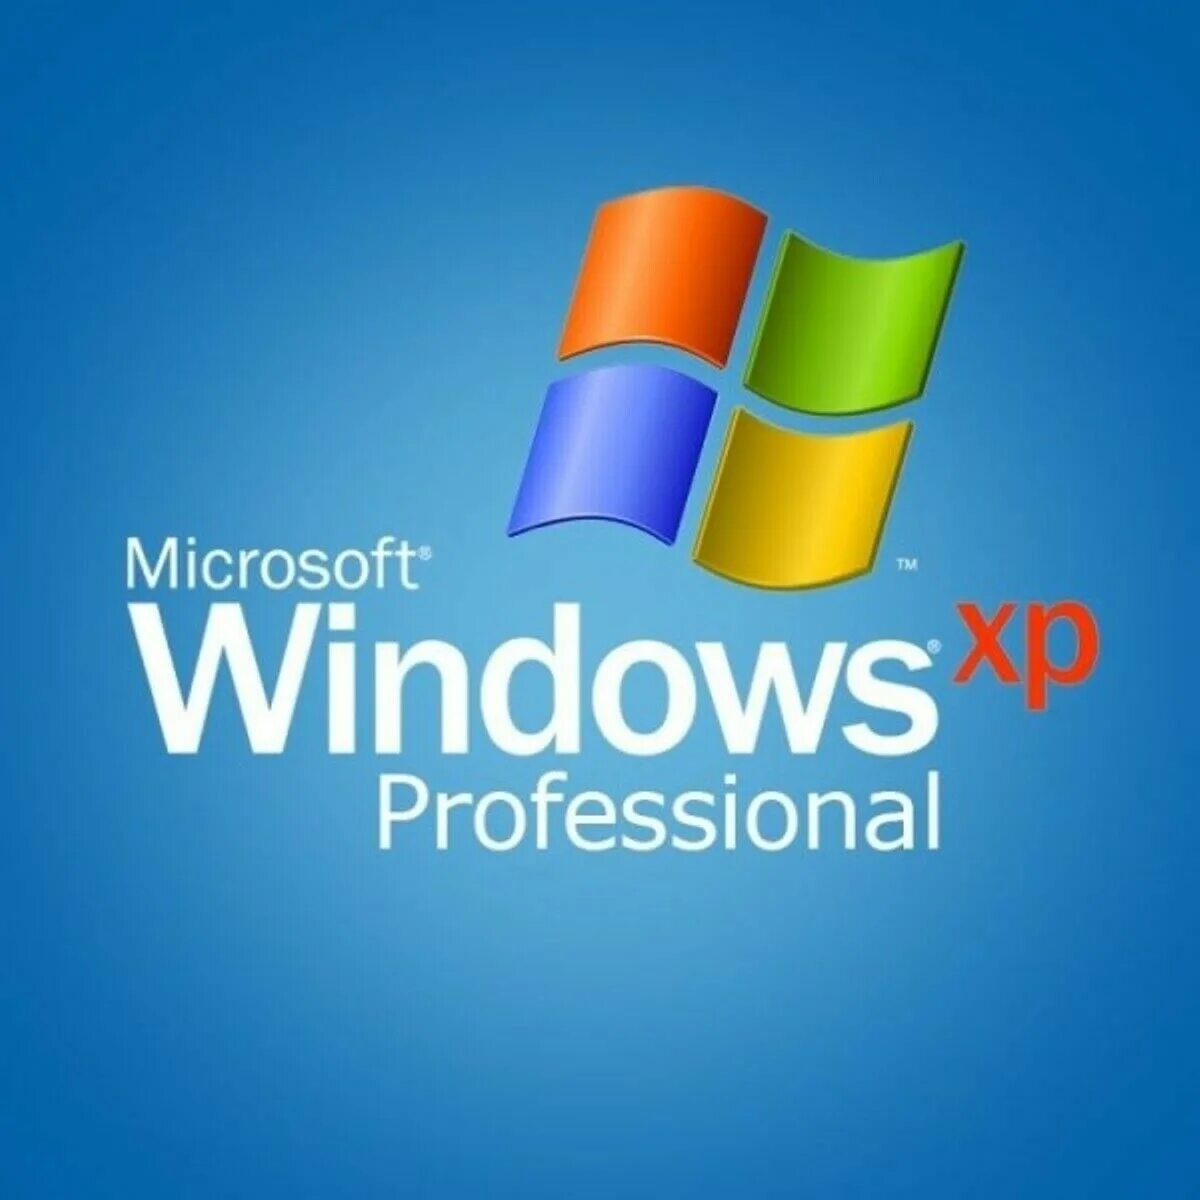 Winxp. Виндовс XP. Windows XP professional диск. Логотип виндовс. Логотип Microsoft Windows XP.